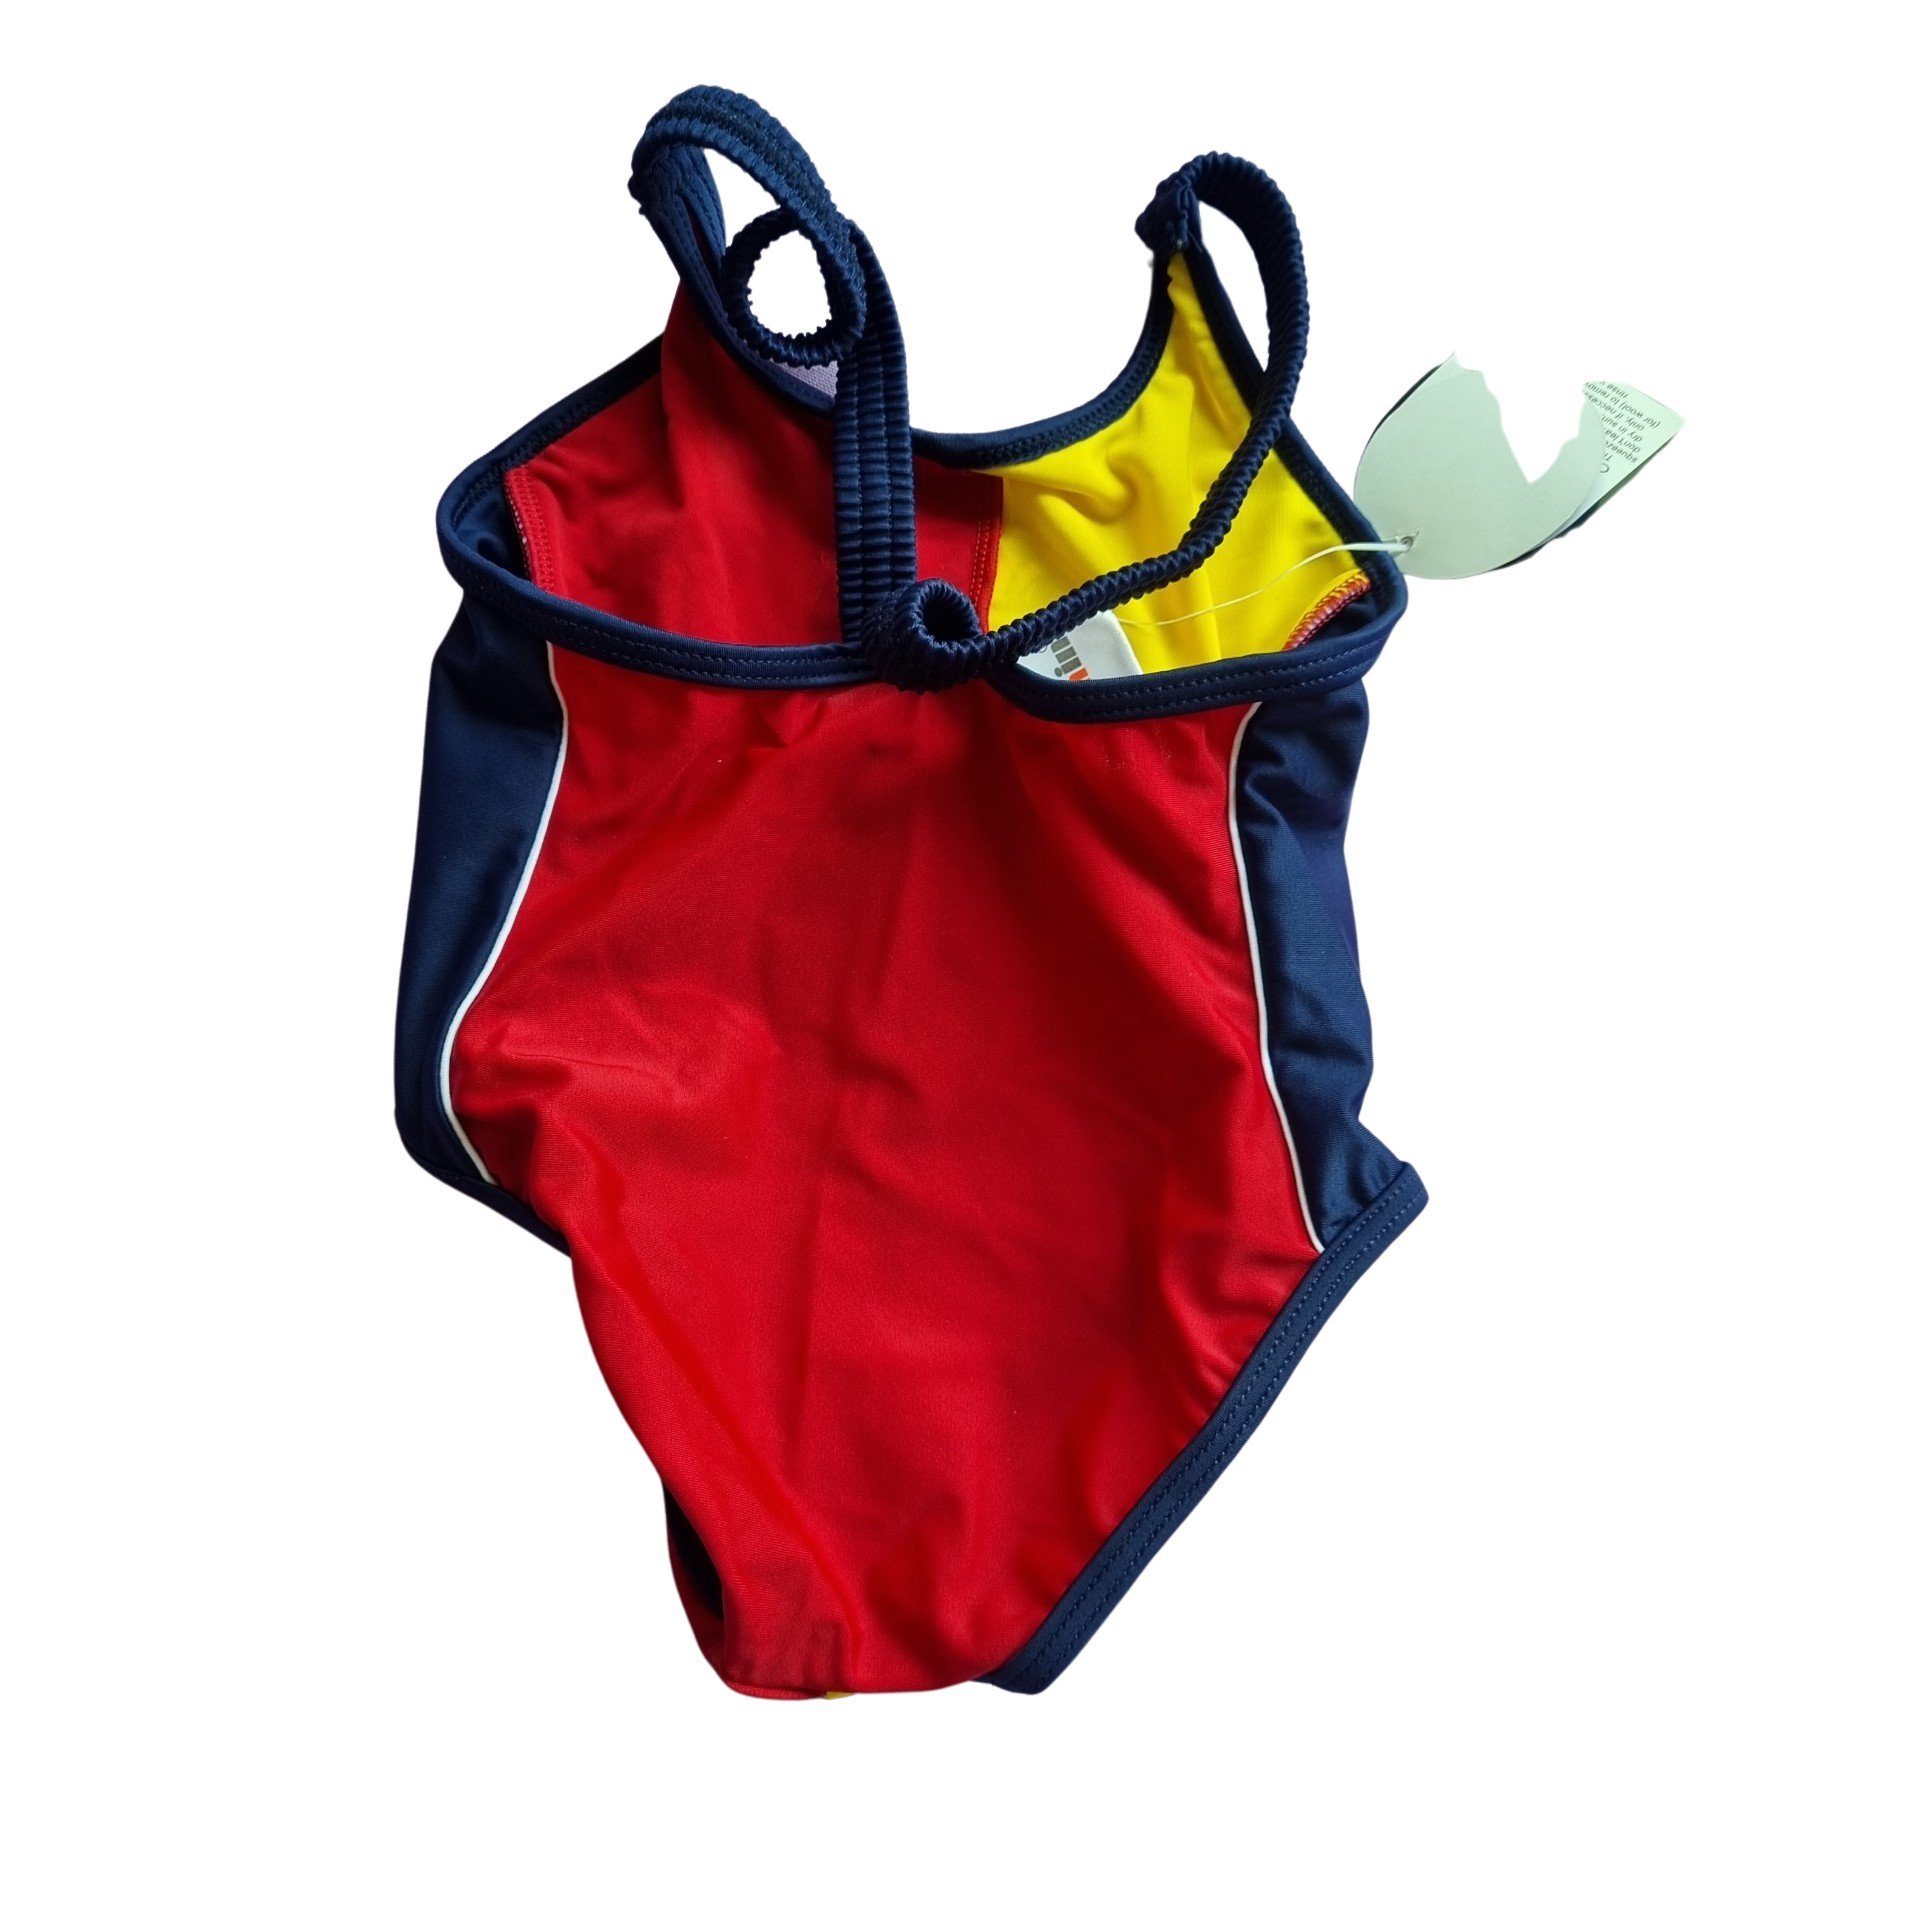 Bellezza blau-gelb-rot Größen + Badeanzug Baby div. Modelle